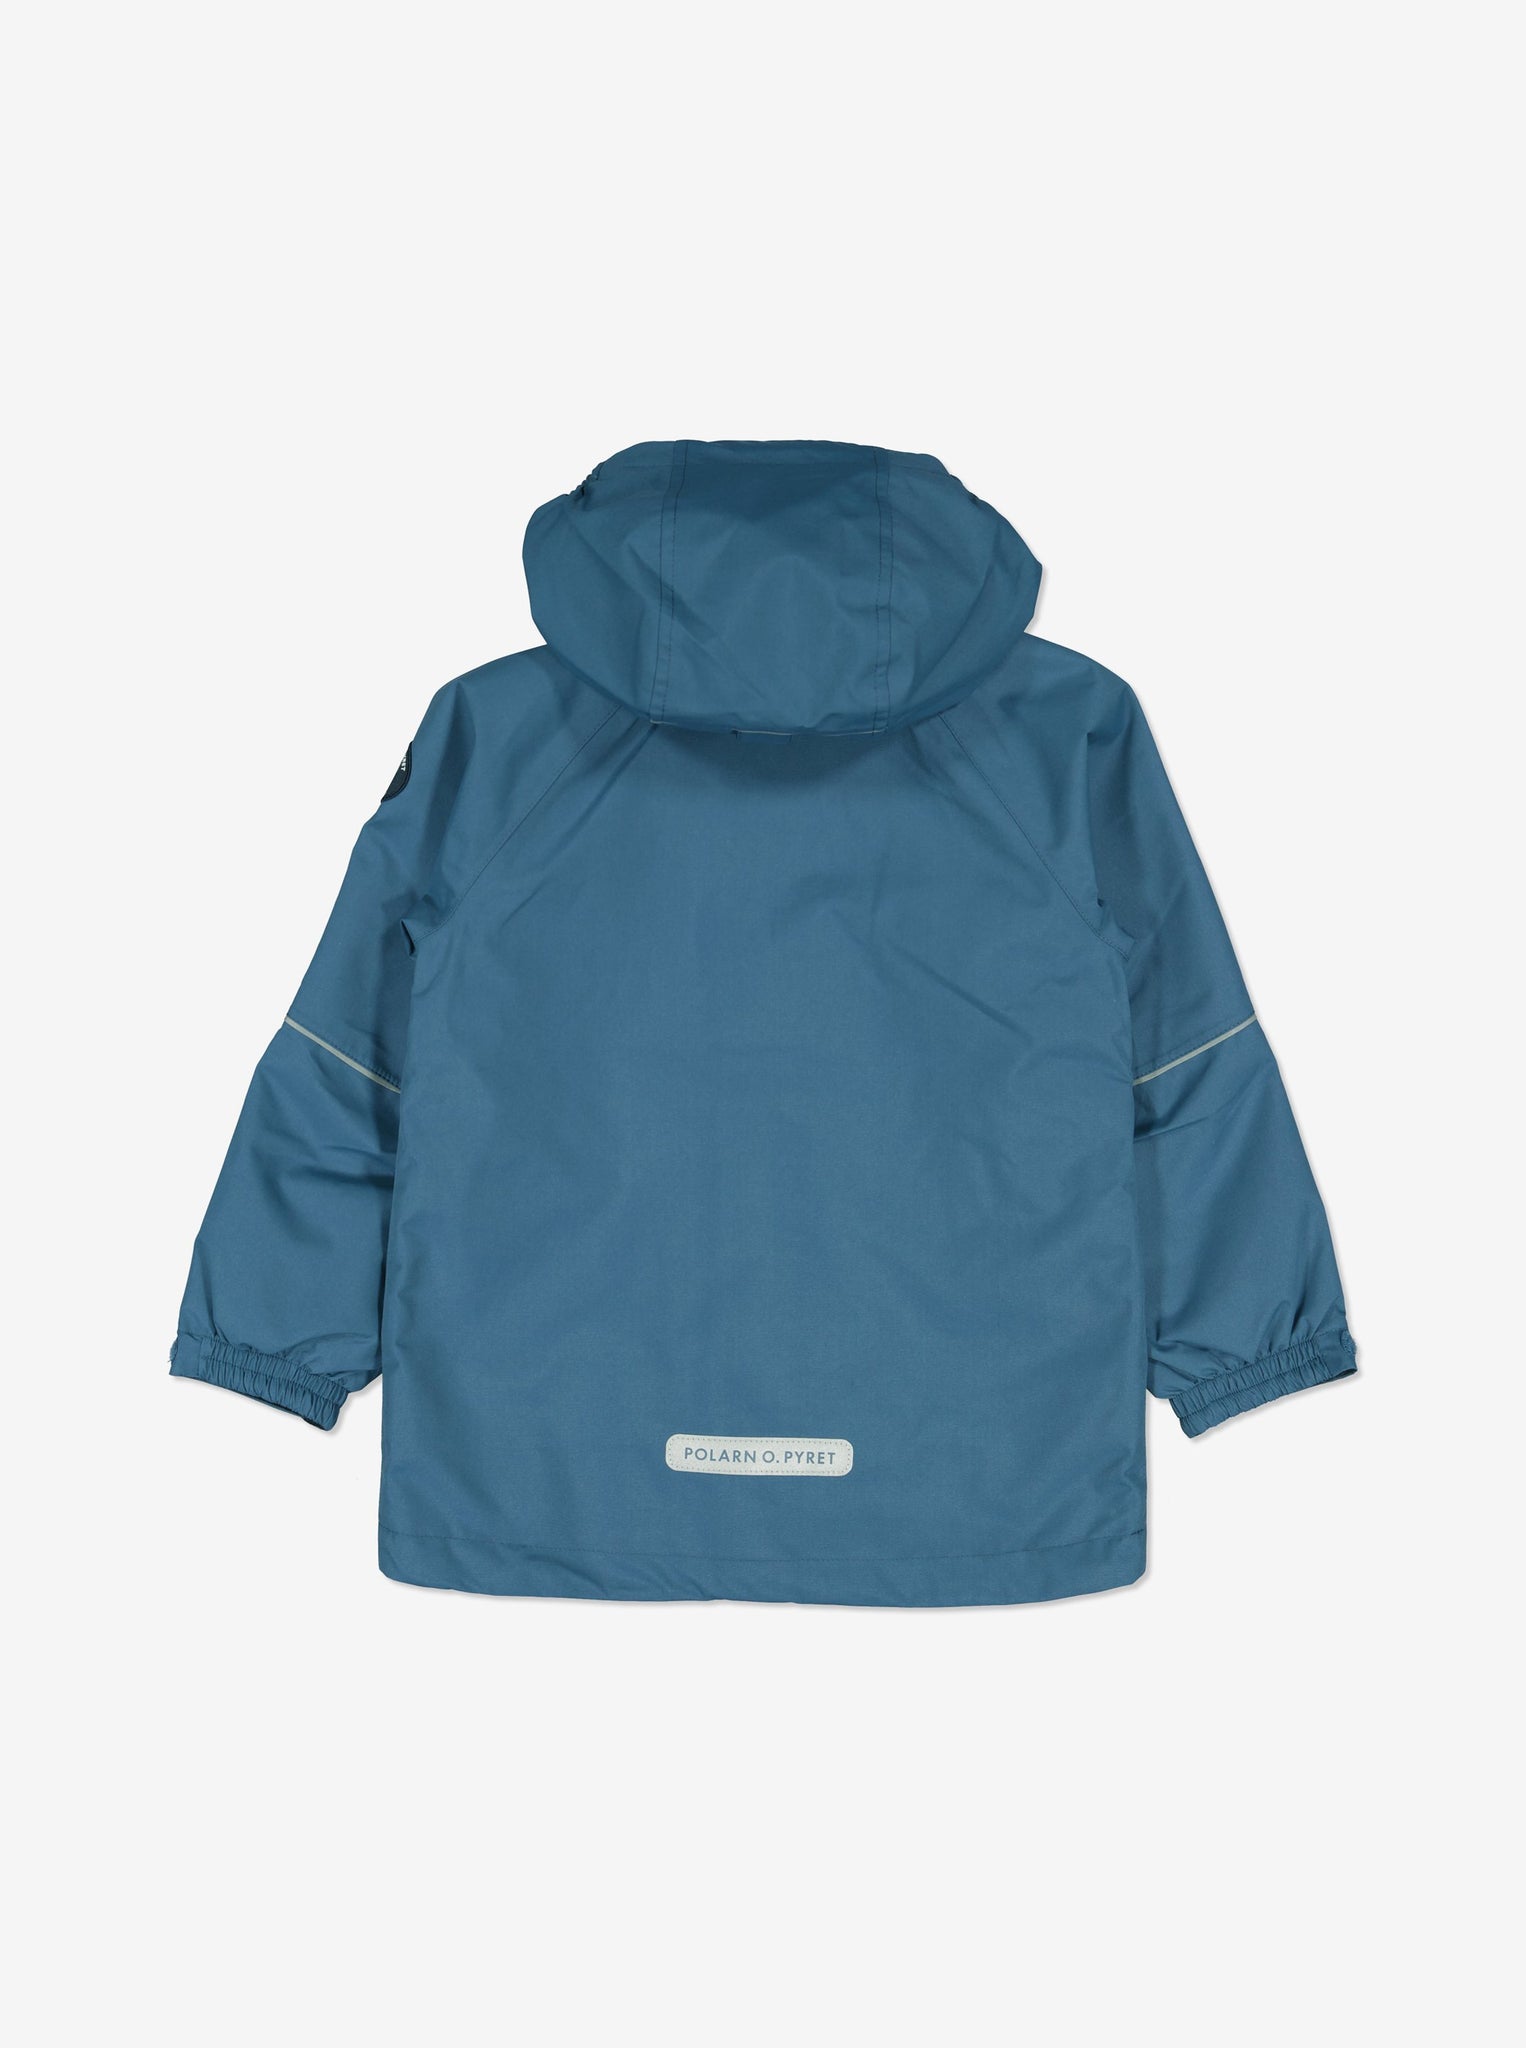 Blue Kids Waterproof Jacket from Polarn O. Pyret Kidswear. Waterproof Kids Jacket